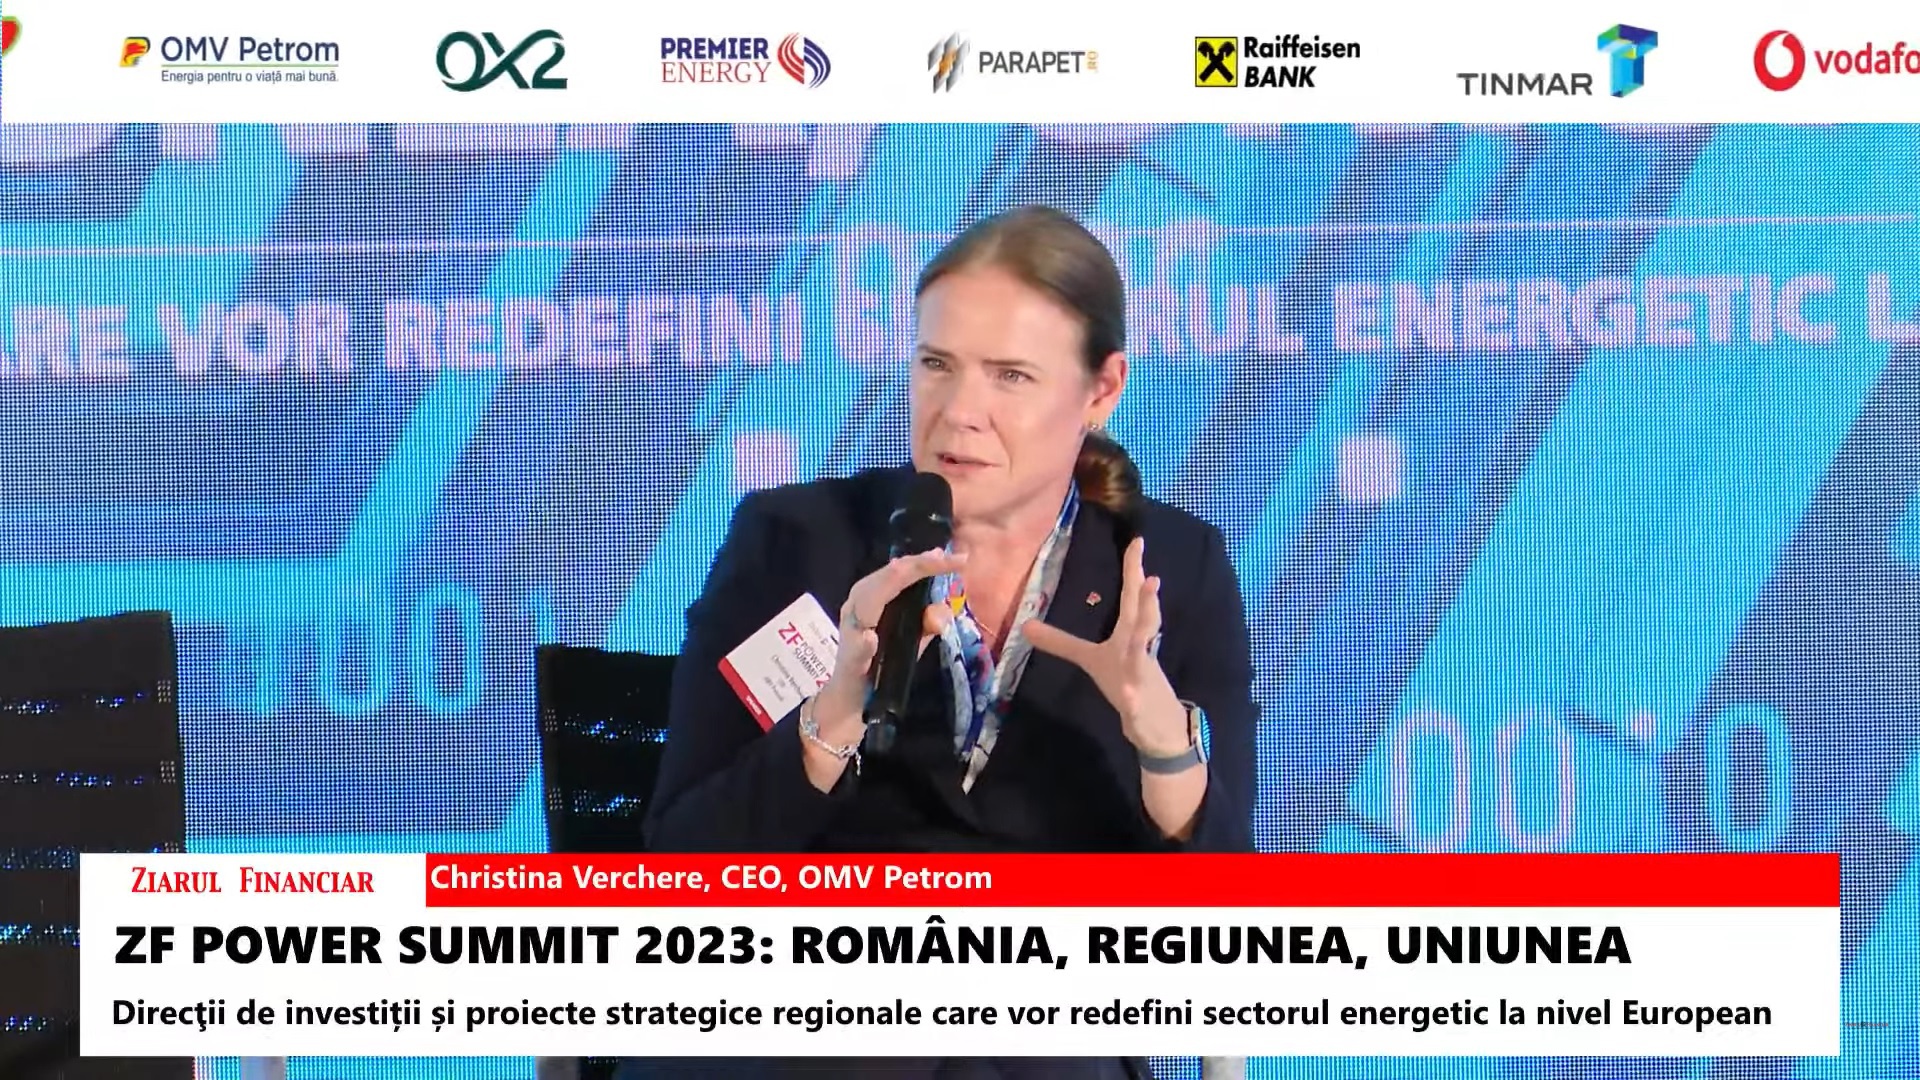 ZF Power Summit 2023. Christina Verchere, CEO OMV Petrom: Marea Neagră va reprezenta un „game changer” pentru România. Potenţialul energetic al României este uriaş, însă pentru a fi atins, trebuie atrase investiţii masive. De când Neptune Deep a fost descoperit în urmă cu 10 ani, alte depozite importante de gaz natural au fost găsite în zonă